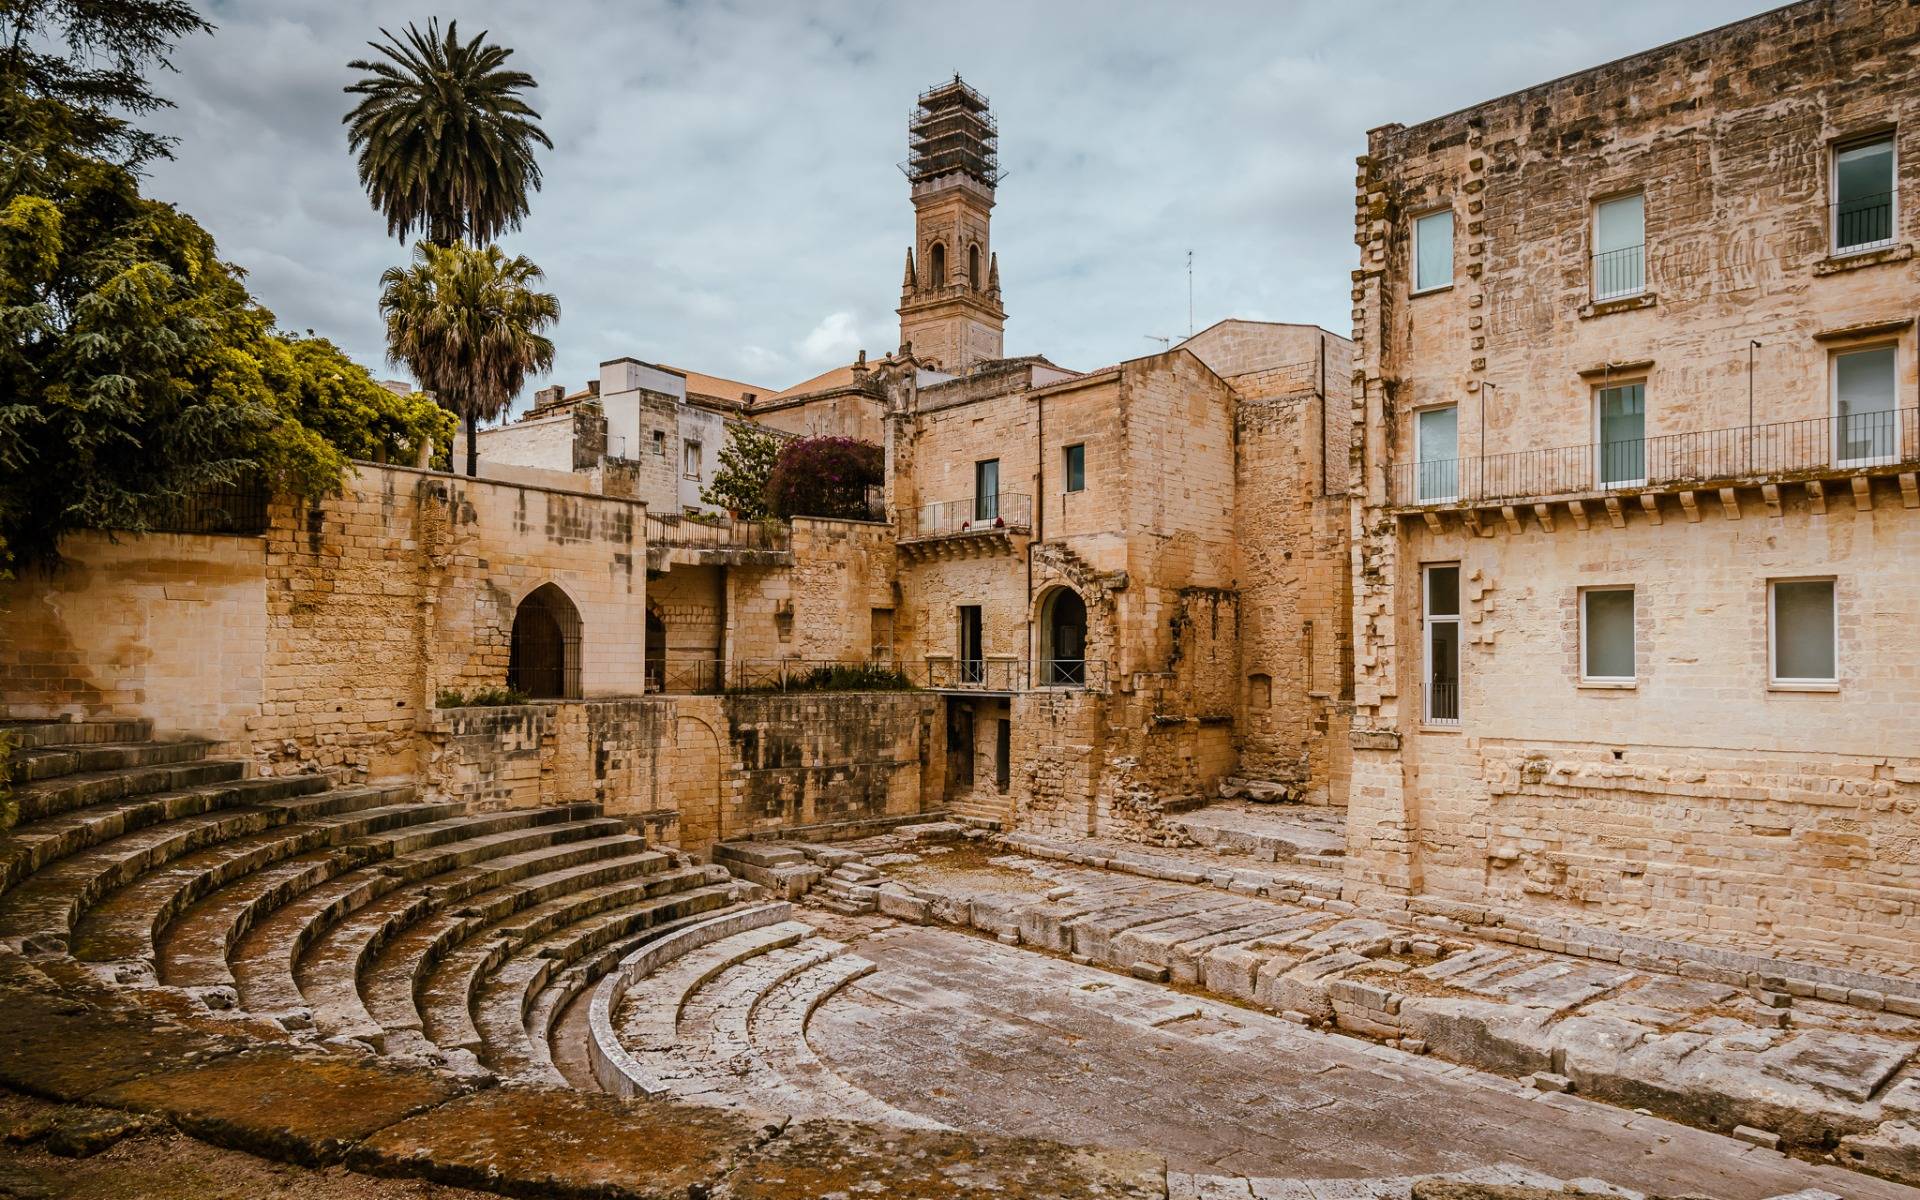 The ”hidden” Roman theater